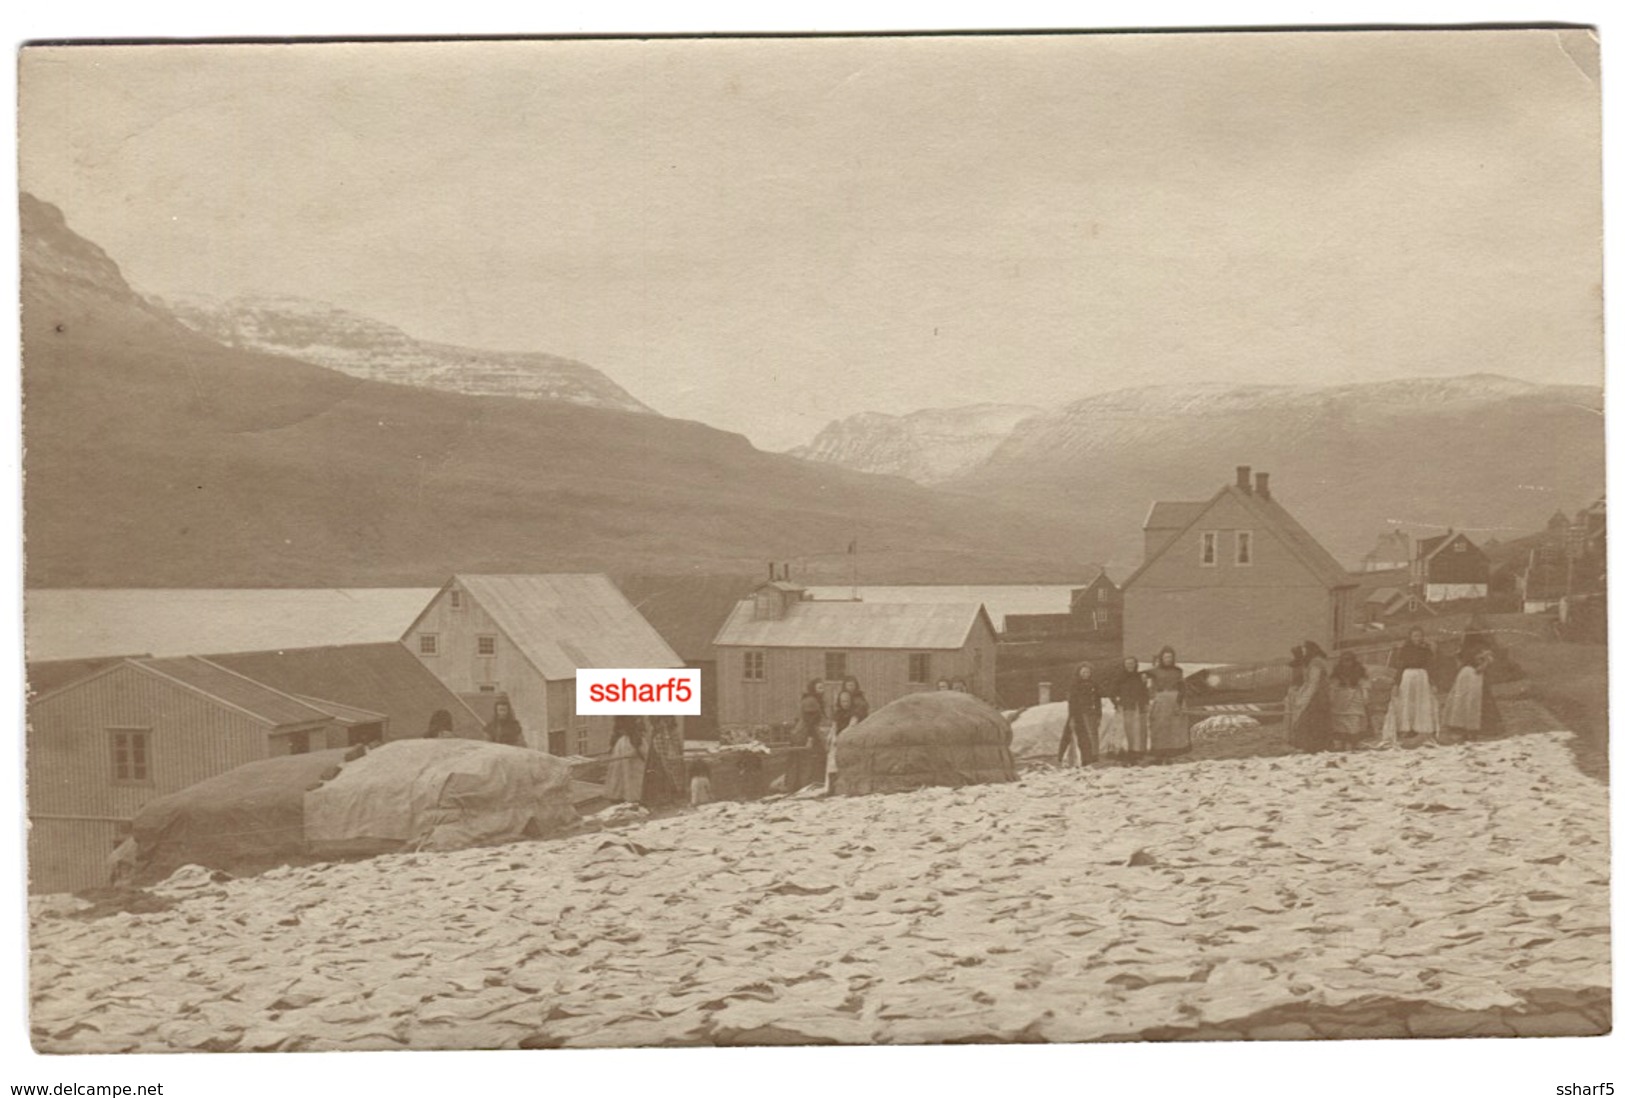 FEROES ISLANDS TRANSGISVAAG Real PHOTO POSTCARD SENT 1908 STREET LIFE - Färöer